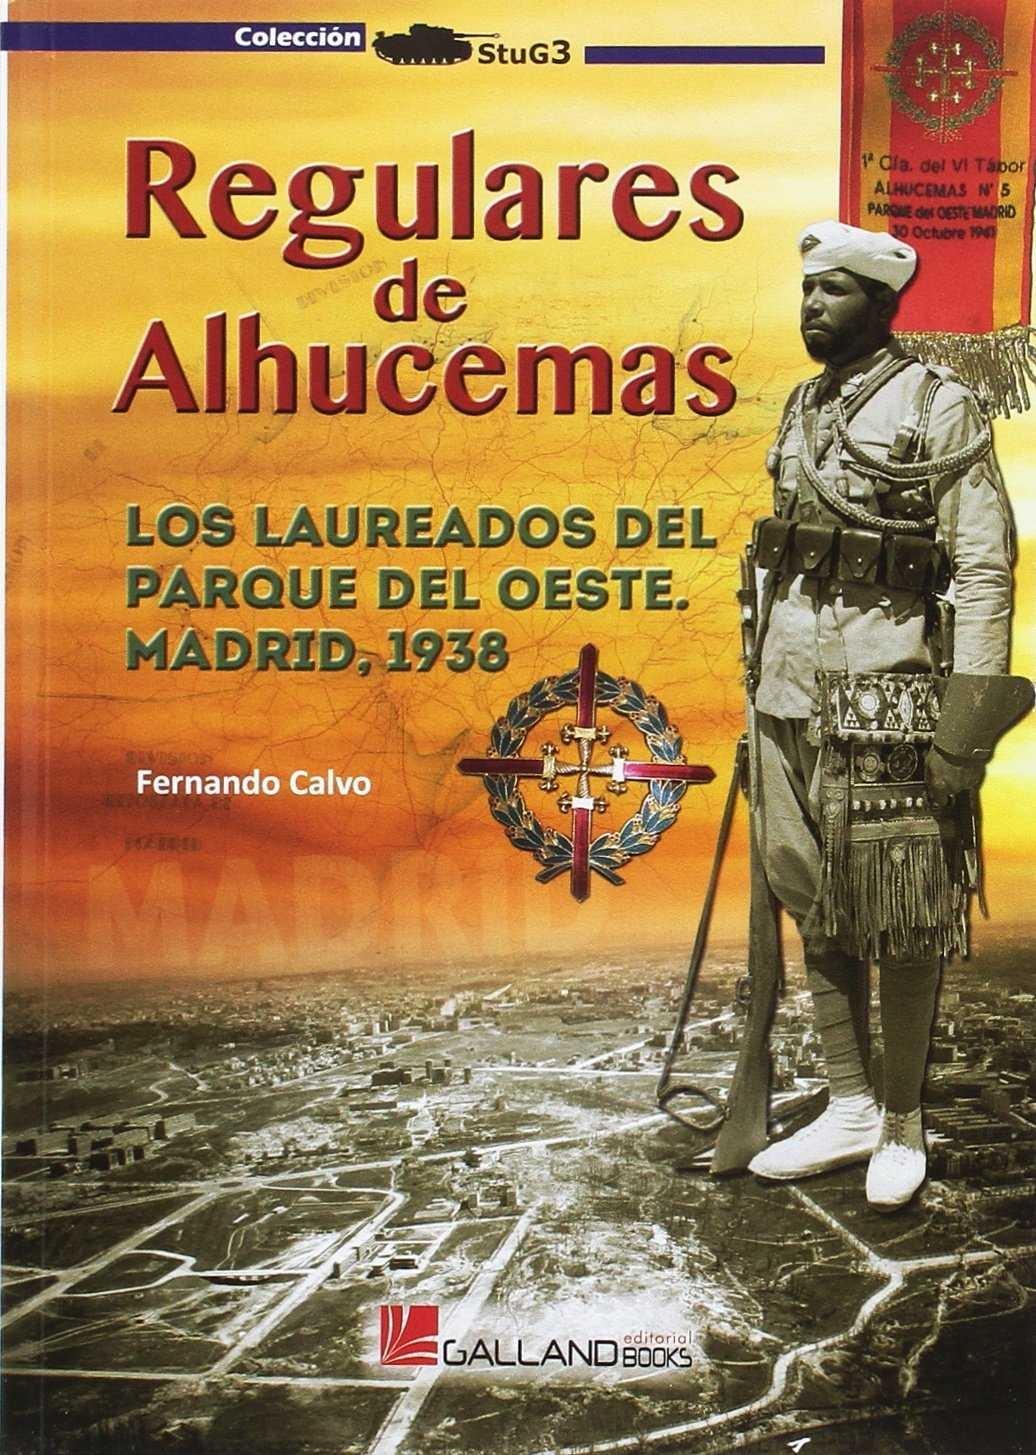 Regulares de Alhucemas "Los Laureados del Parque del Oeste de Madrid, 1938.". 